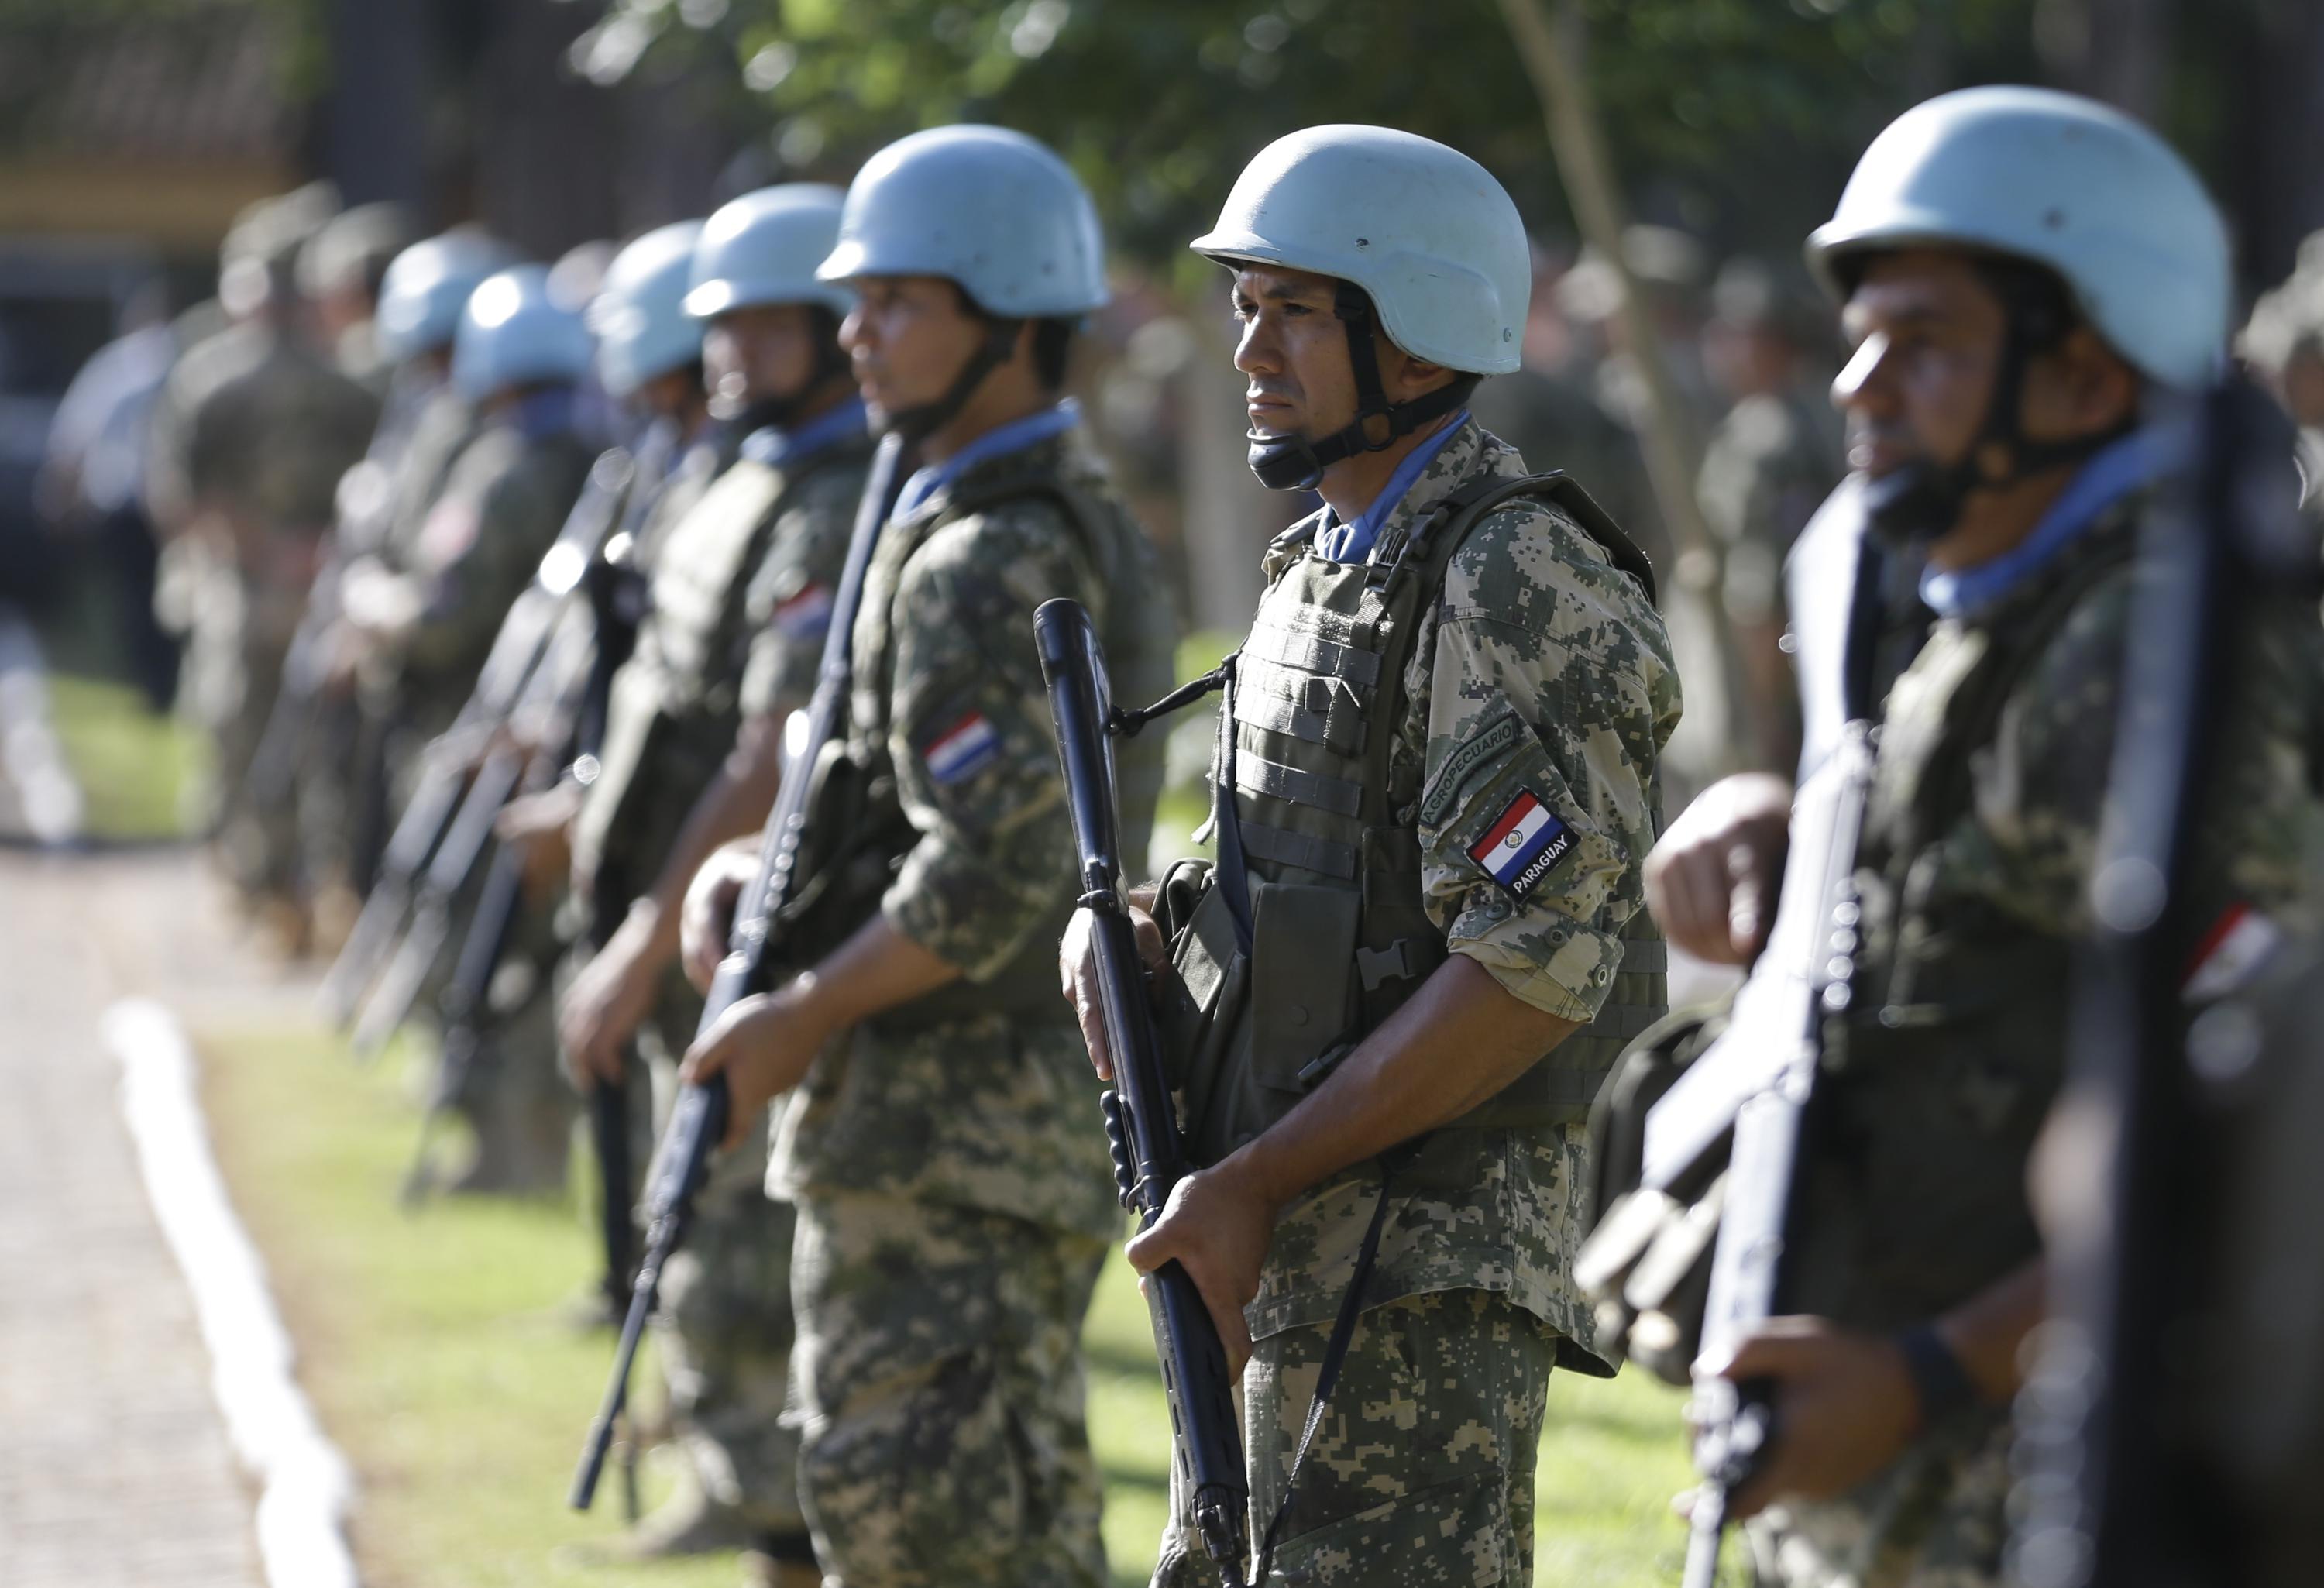 Principles of peacekeeping  United Nations Peacekeeping